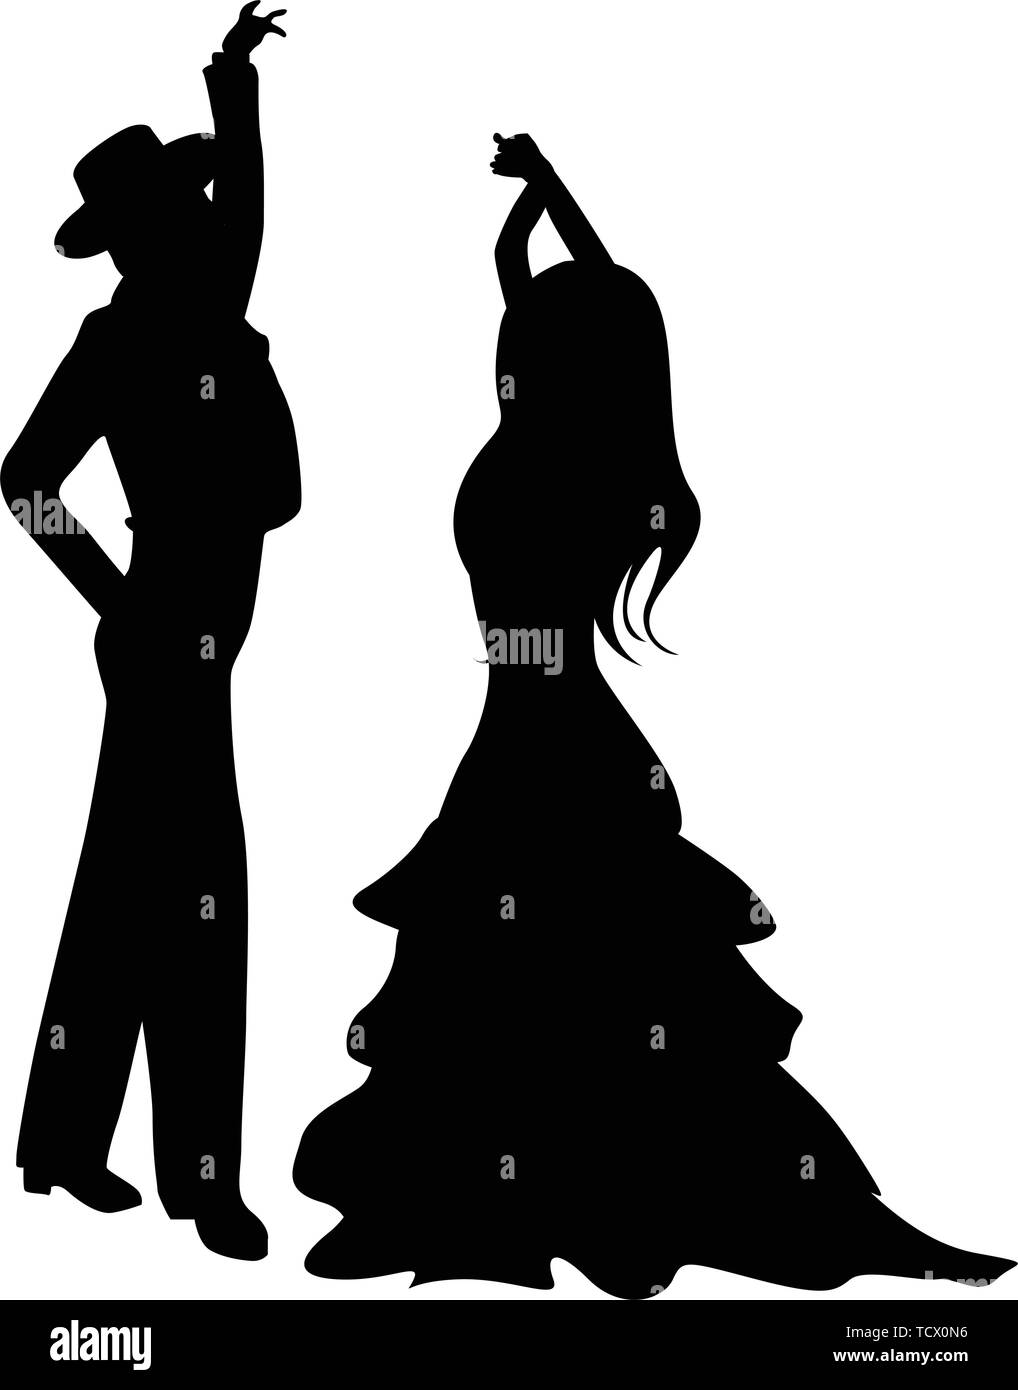 Danseurs de Flamenco silhouettes, isolés et des objets groupés sur fond blanc Illustration de Vecteur